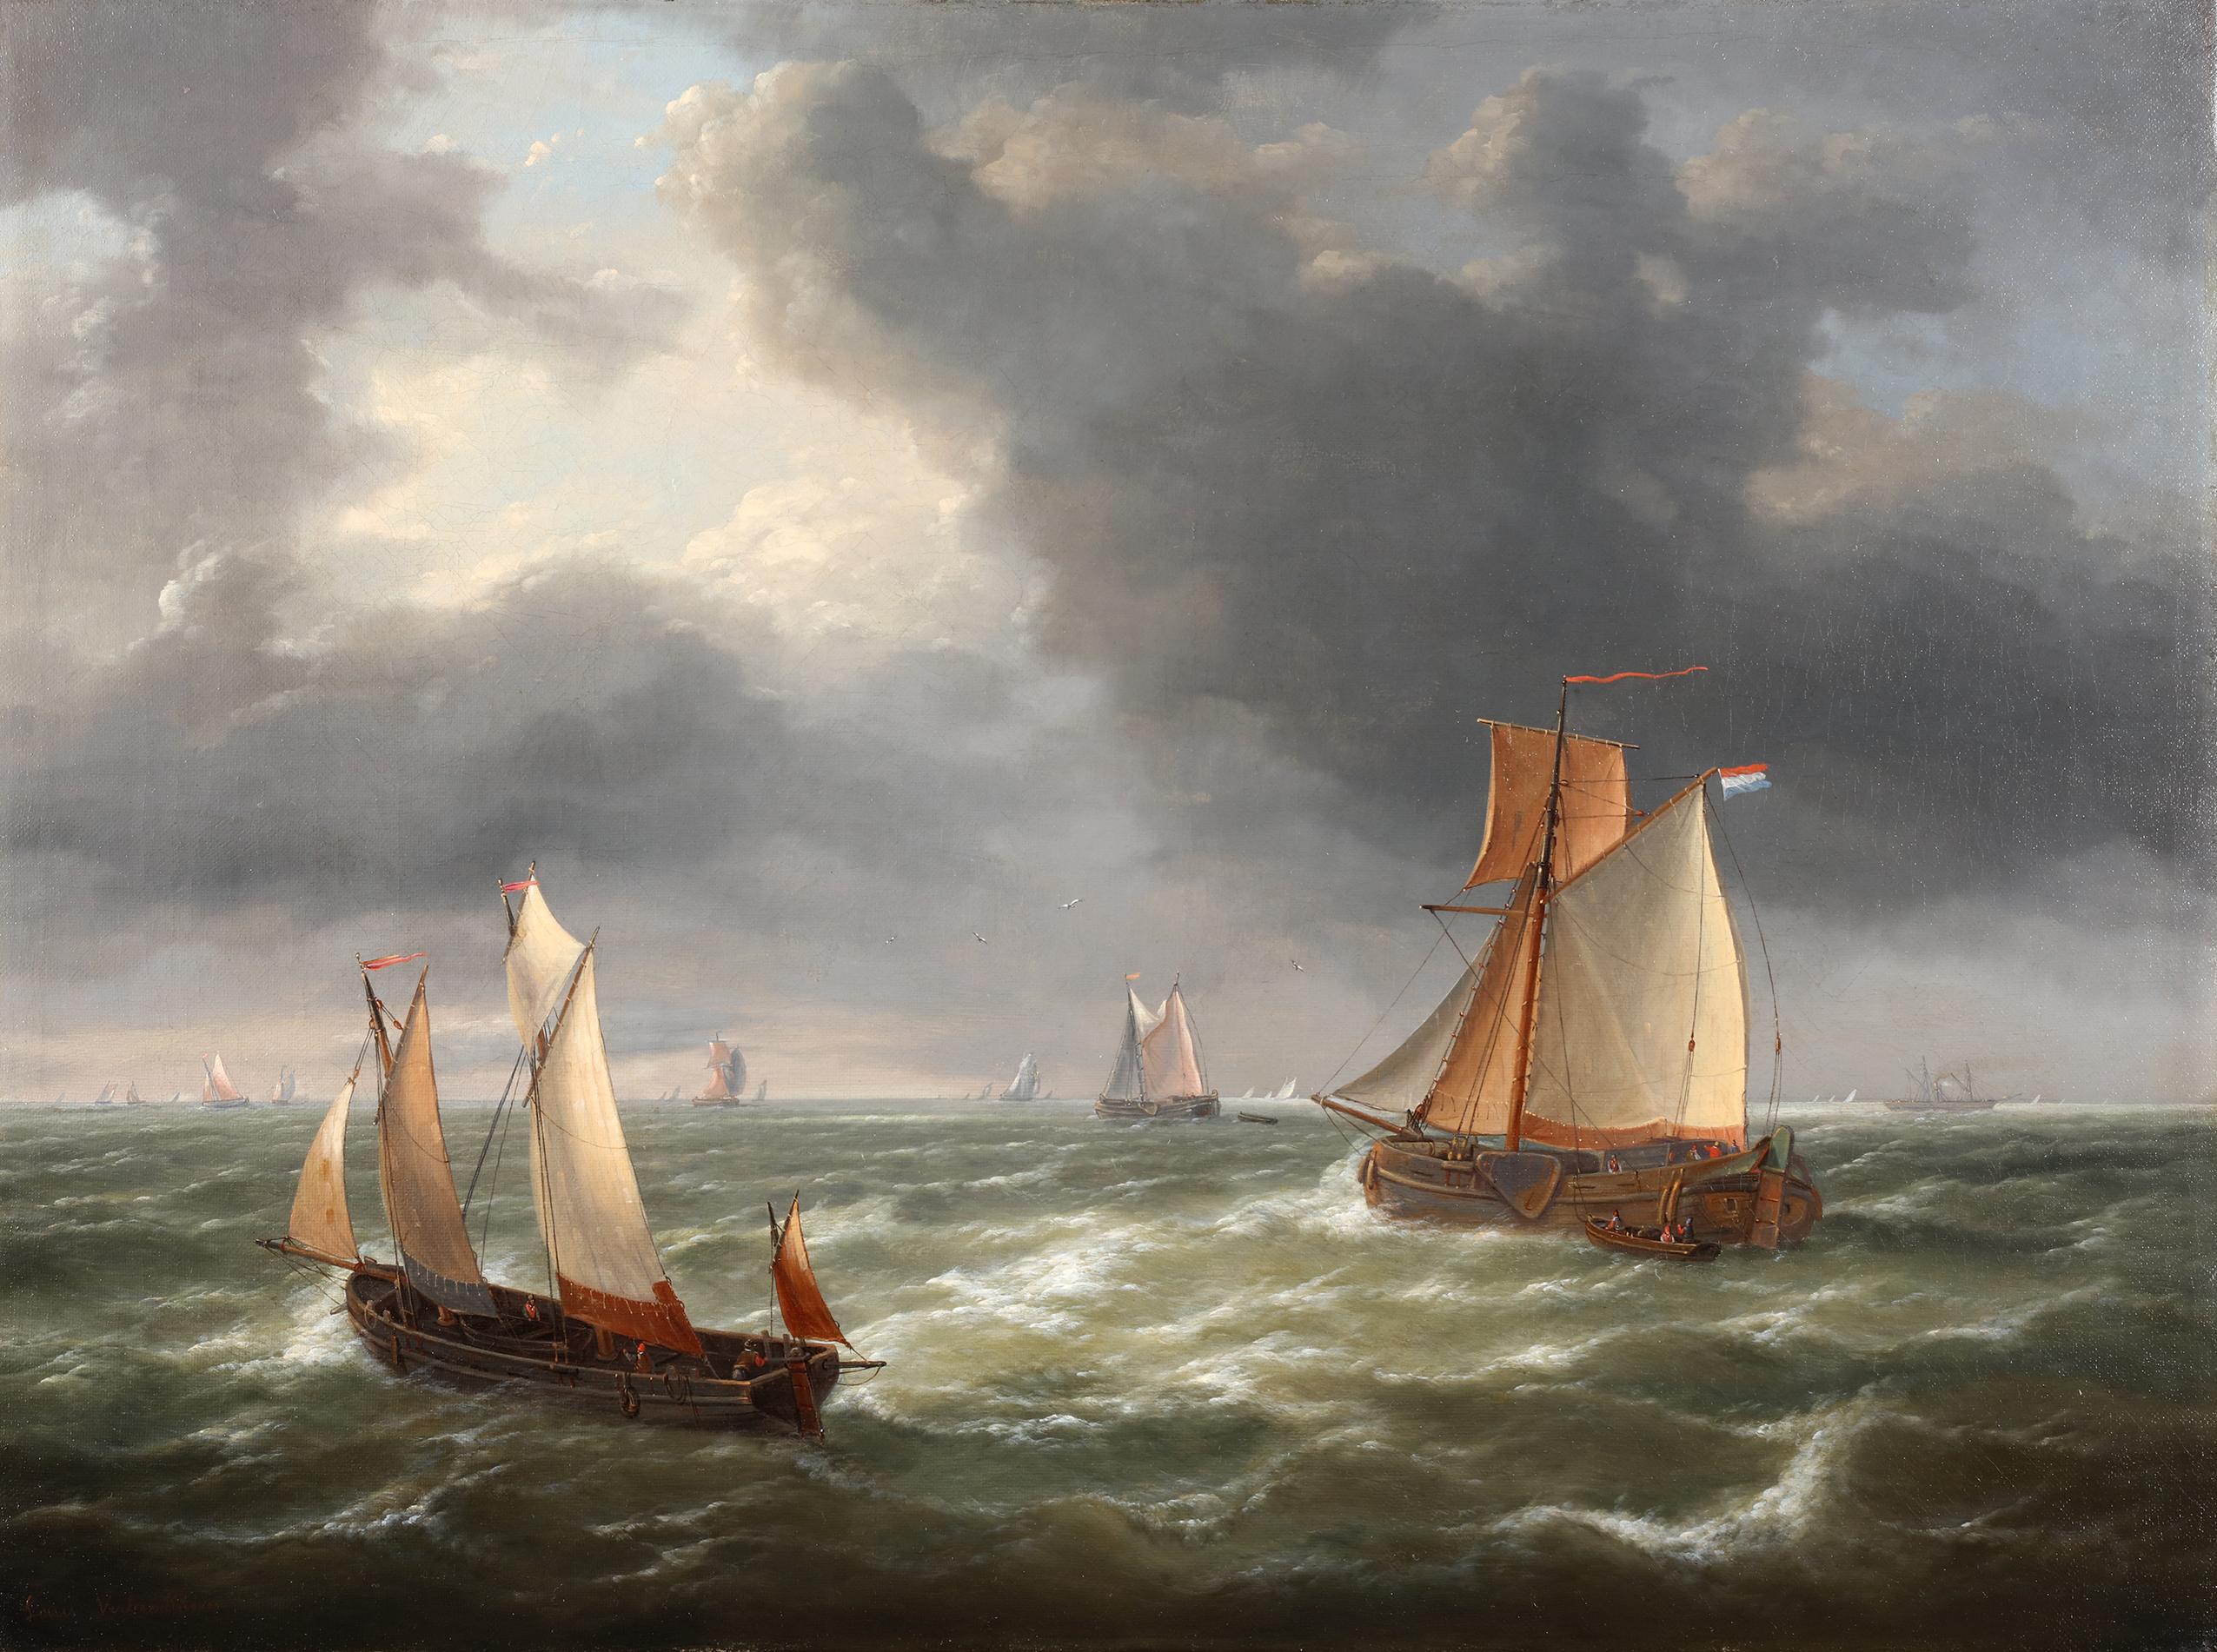 Öl auf Leinwand

Signiert unten links: "Louis Verboeckhoven"

Abmessungen: 53 x 70 cm, 79 x 97 cm (gerahmt)


"Schiffe auf offener See" ist ein Kunstwerk von Charles-Louis Verboeckhoven, das eine stimmungsvolle Darstellung des maritimen Lebens